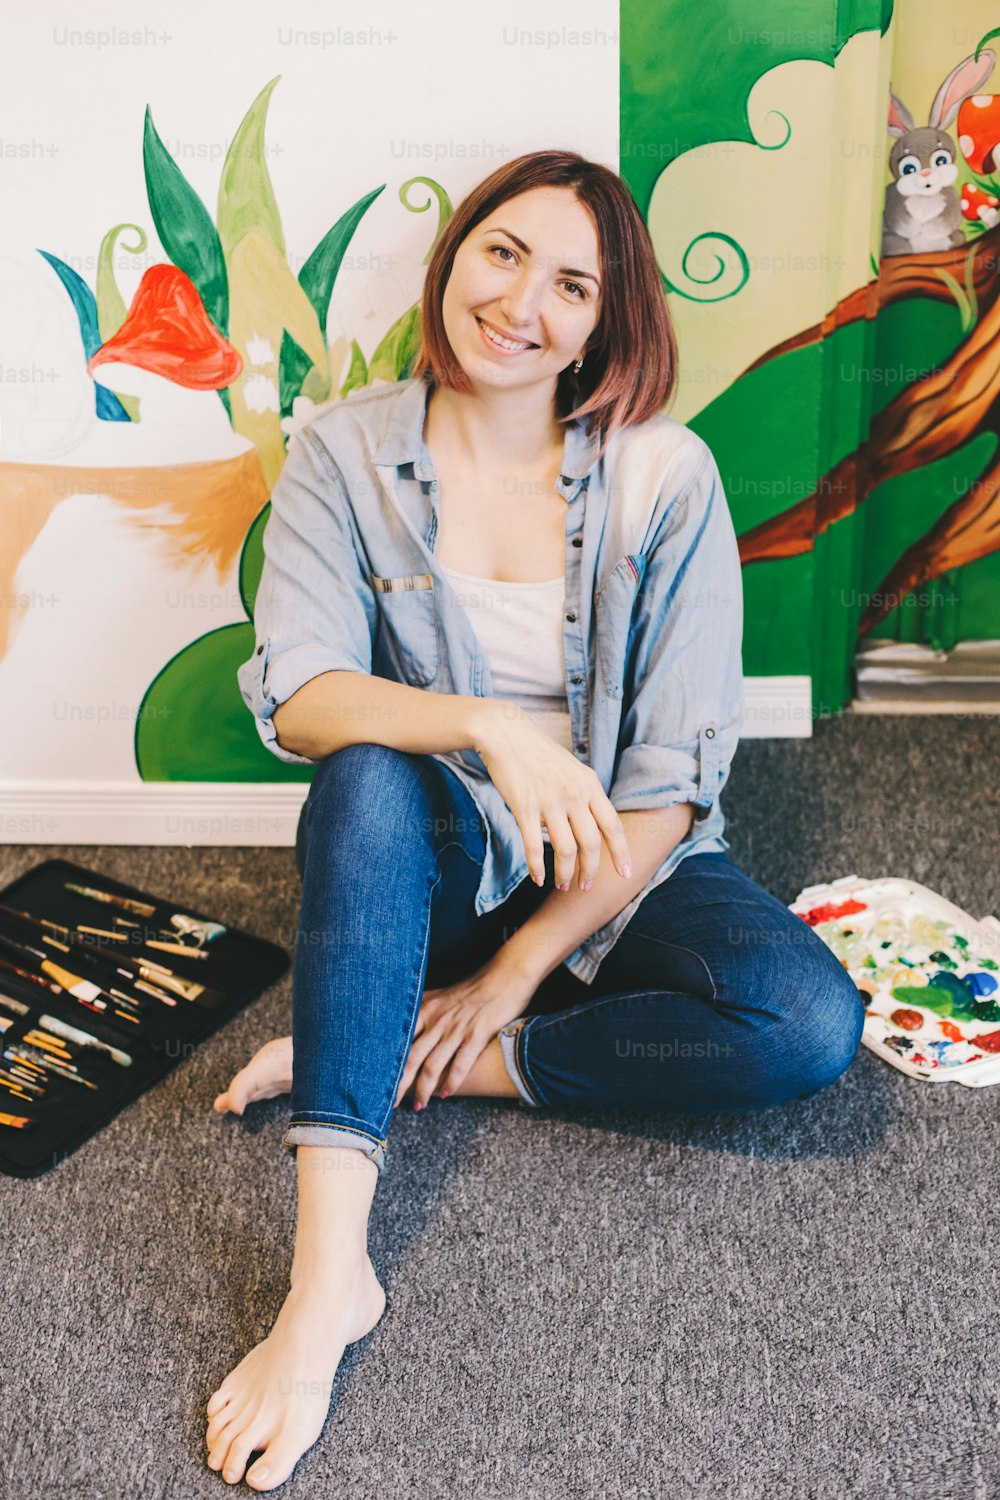 Artiste femme caucasienne se détendant après avoir peint à la main des peintures murales sur les murs intérieurs de l’appartement ou de l’école de studio avec des peintures acryliques. Passe-temps créatif et concept d’emploi parallèle de travail artistique indépendant.